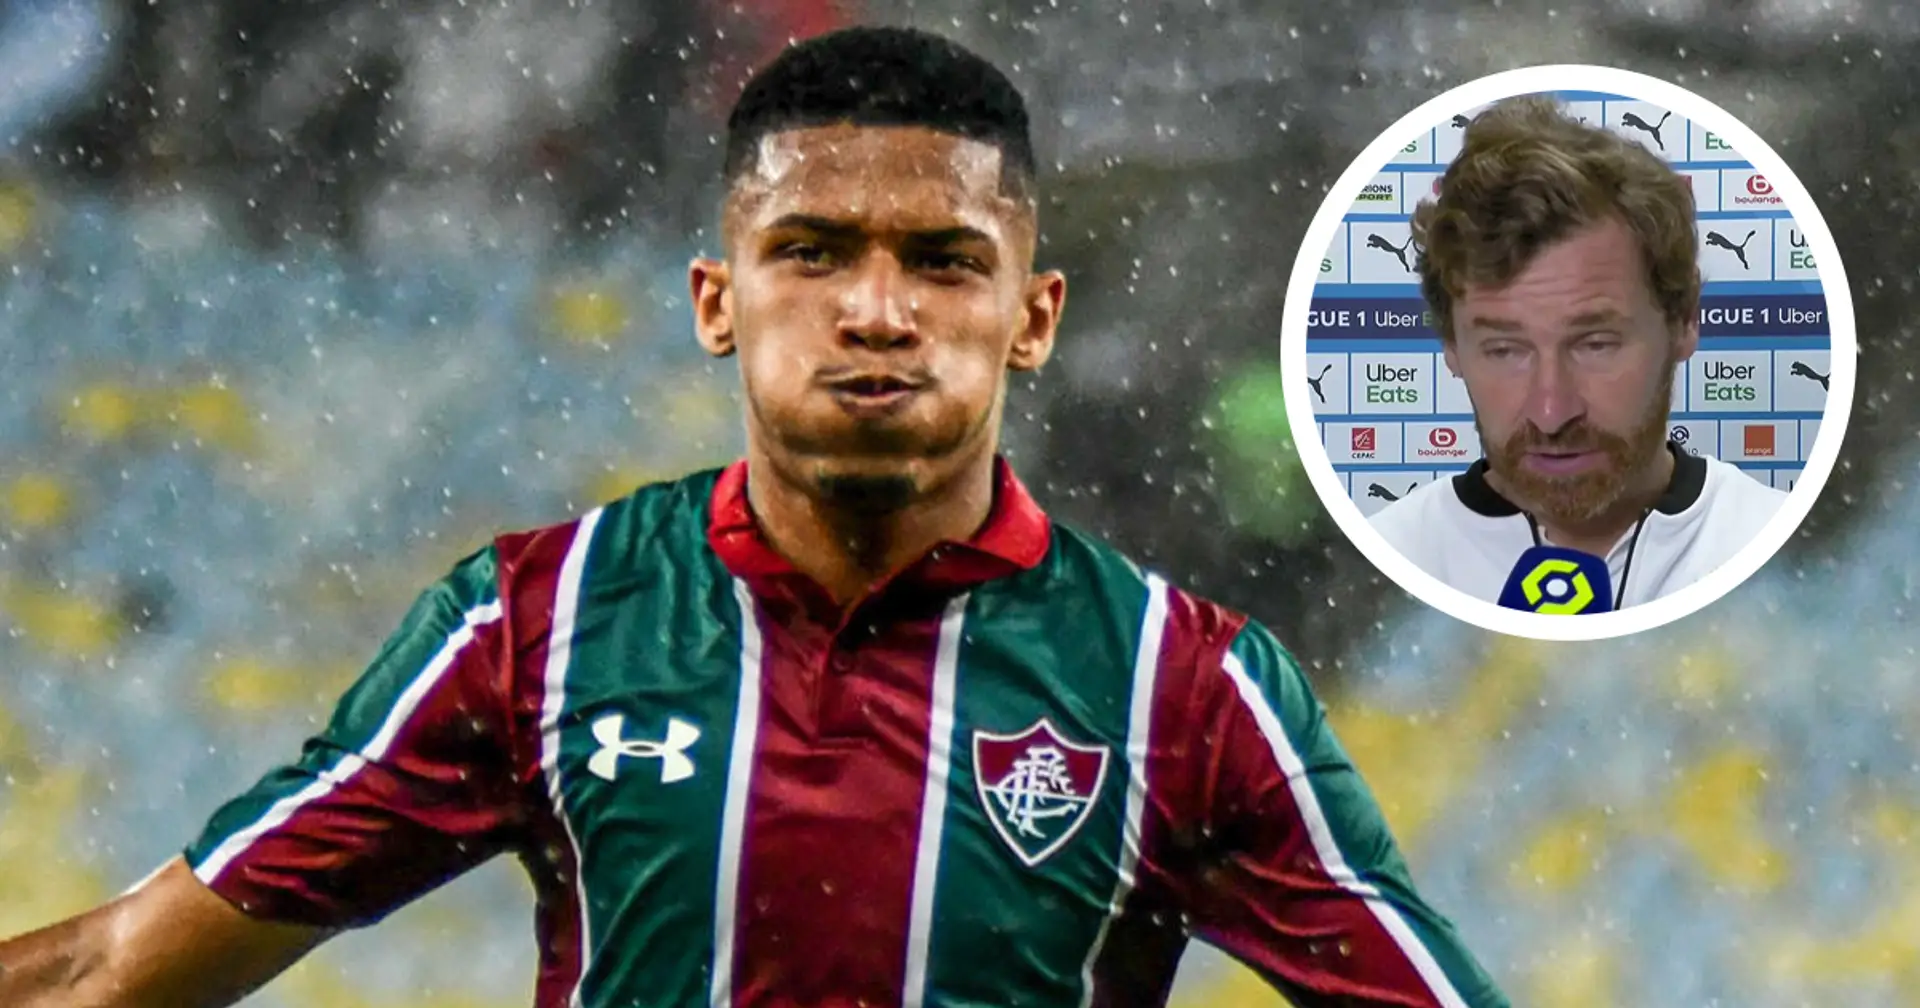 ✨ "C'est une pépite": l'indice de Villas-Boas qui laisse à penser que Marcos Paulo (Fluminense) va signer à l'OM